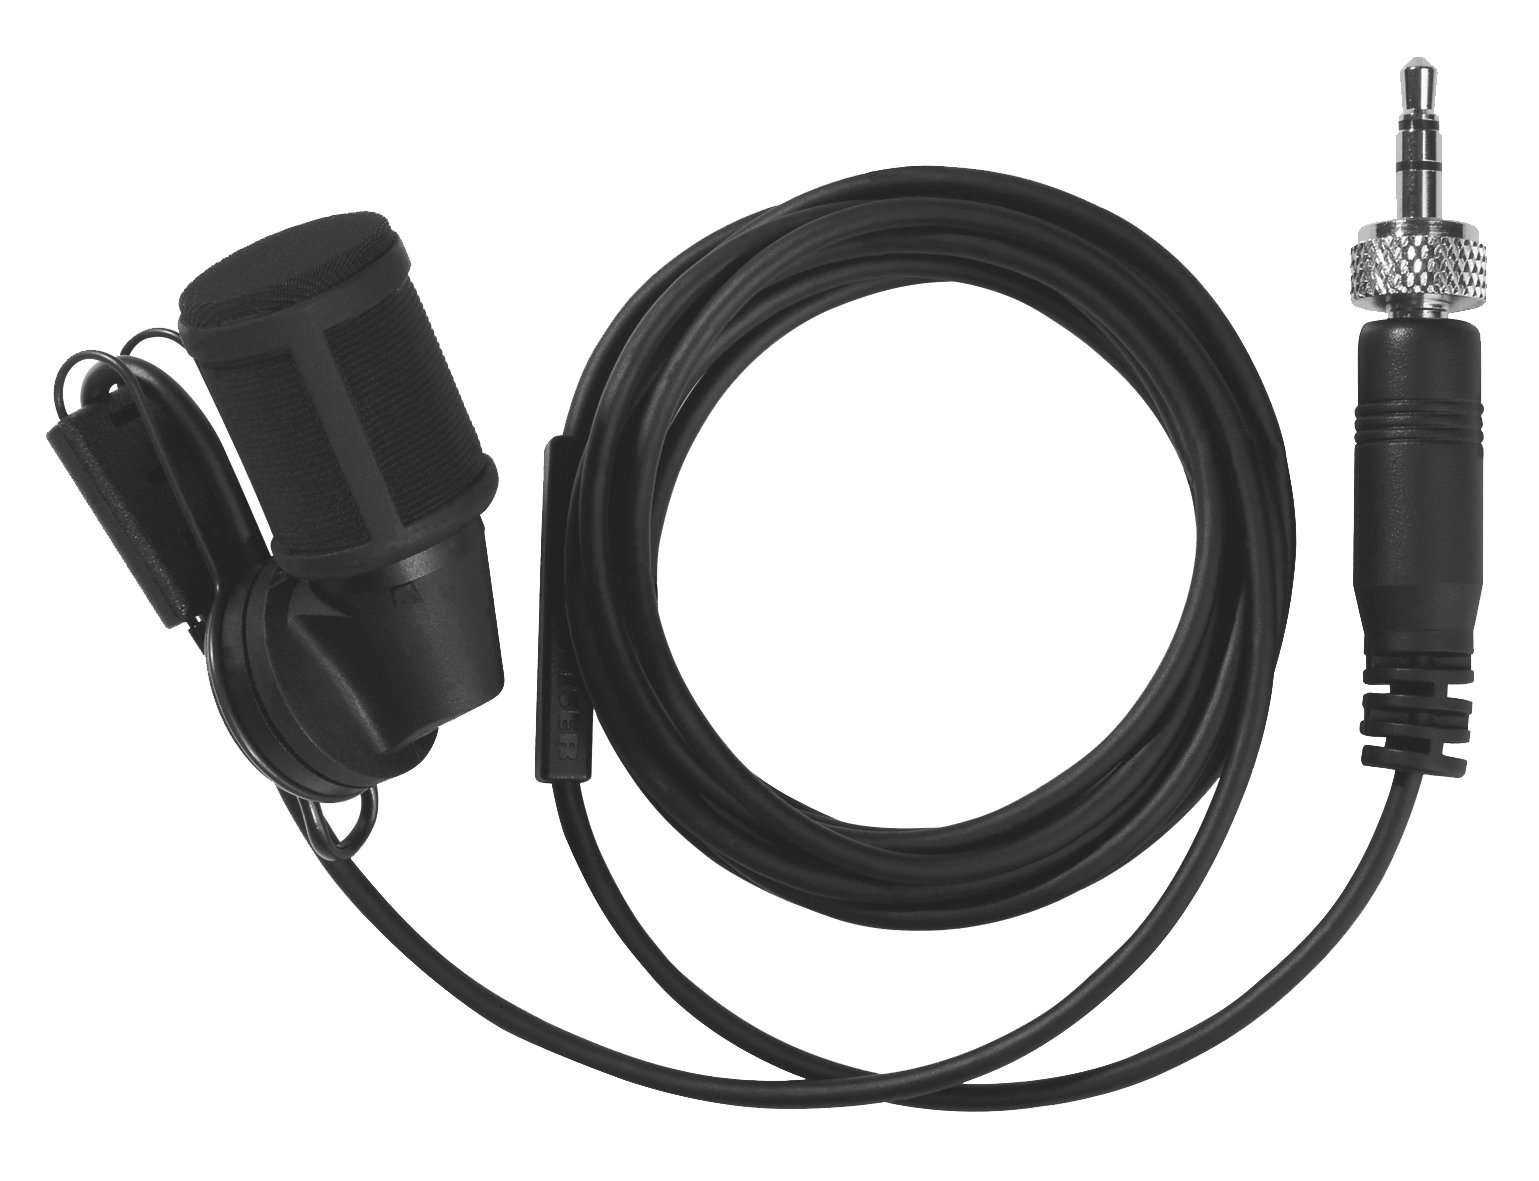 SENNHEISER MKE 40-EW компактный петличный микрофон для передатчиков серии Evolution, кардиода. 